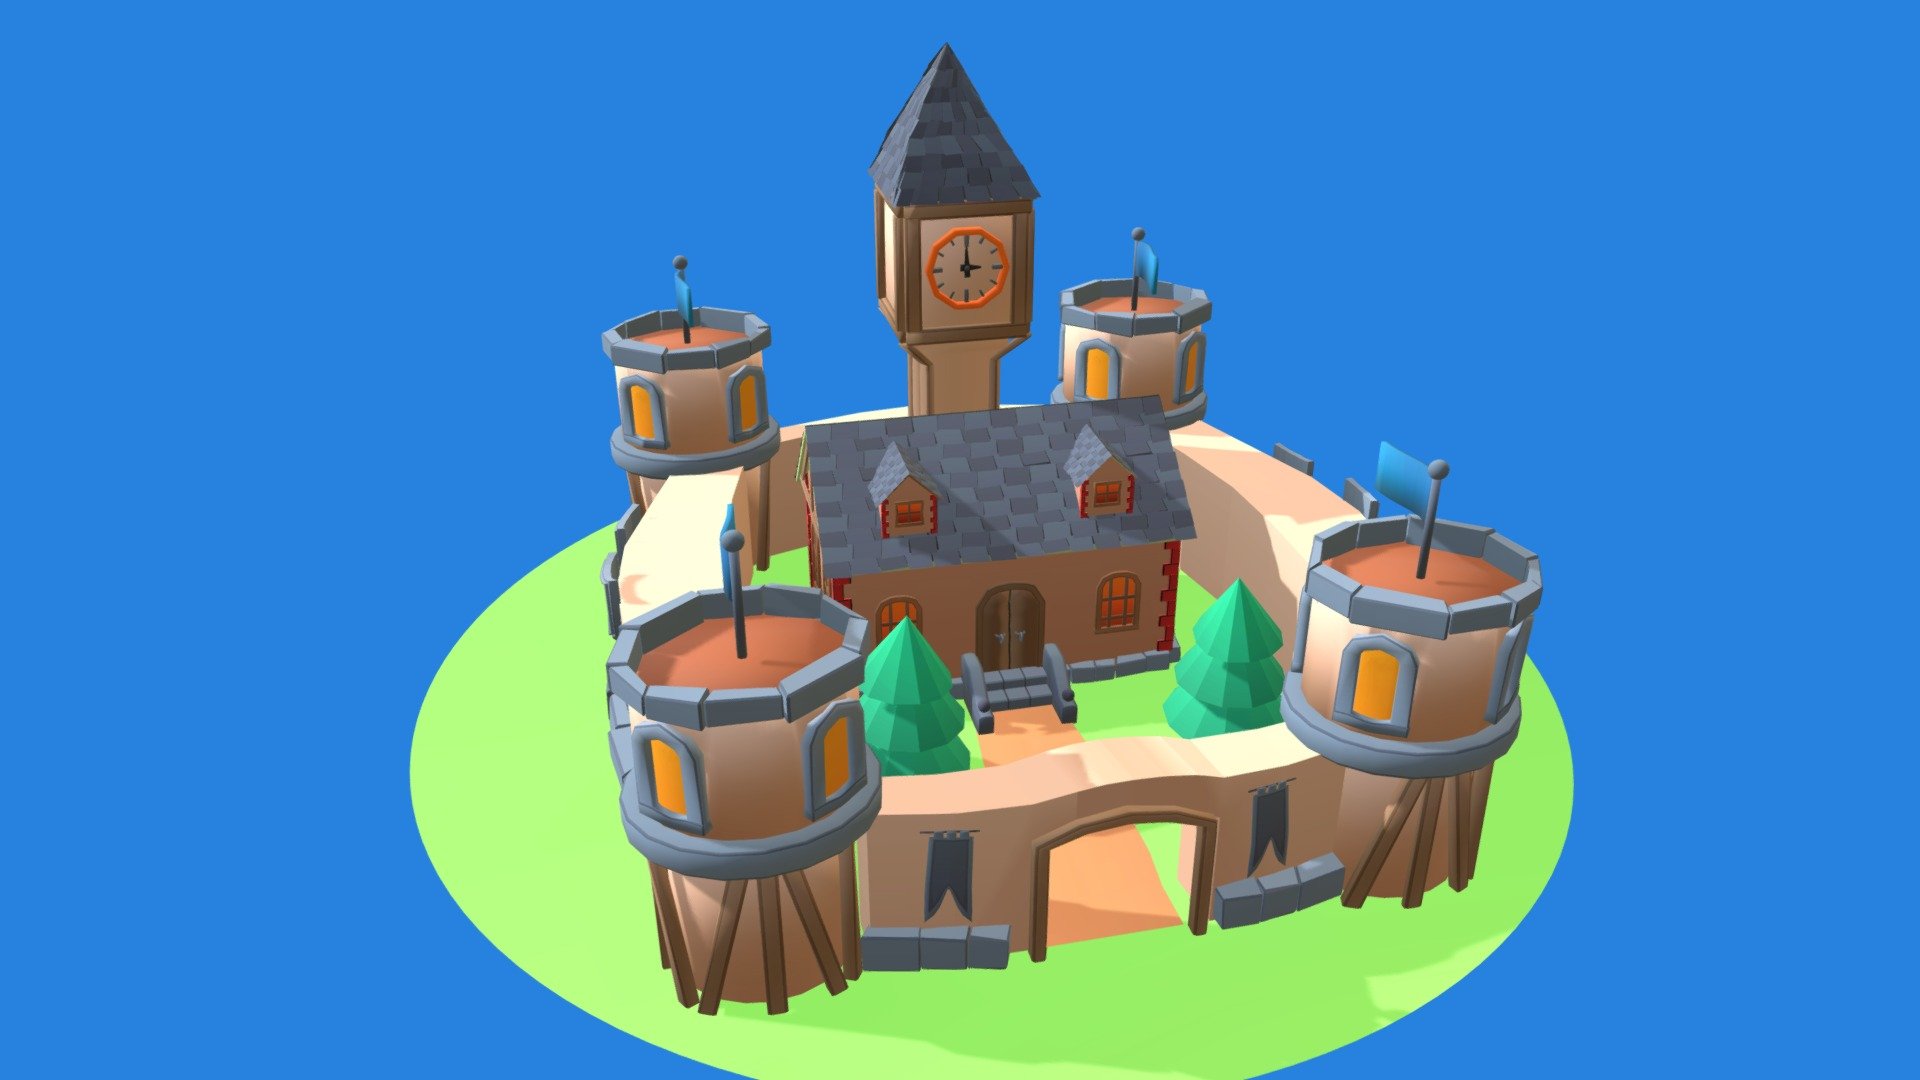 Stylized low poly model of Castle - Castle - 3D model by Pe4enbka48 3d model